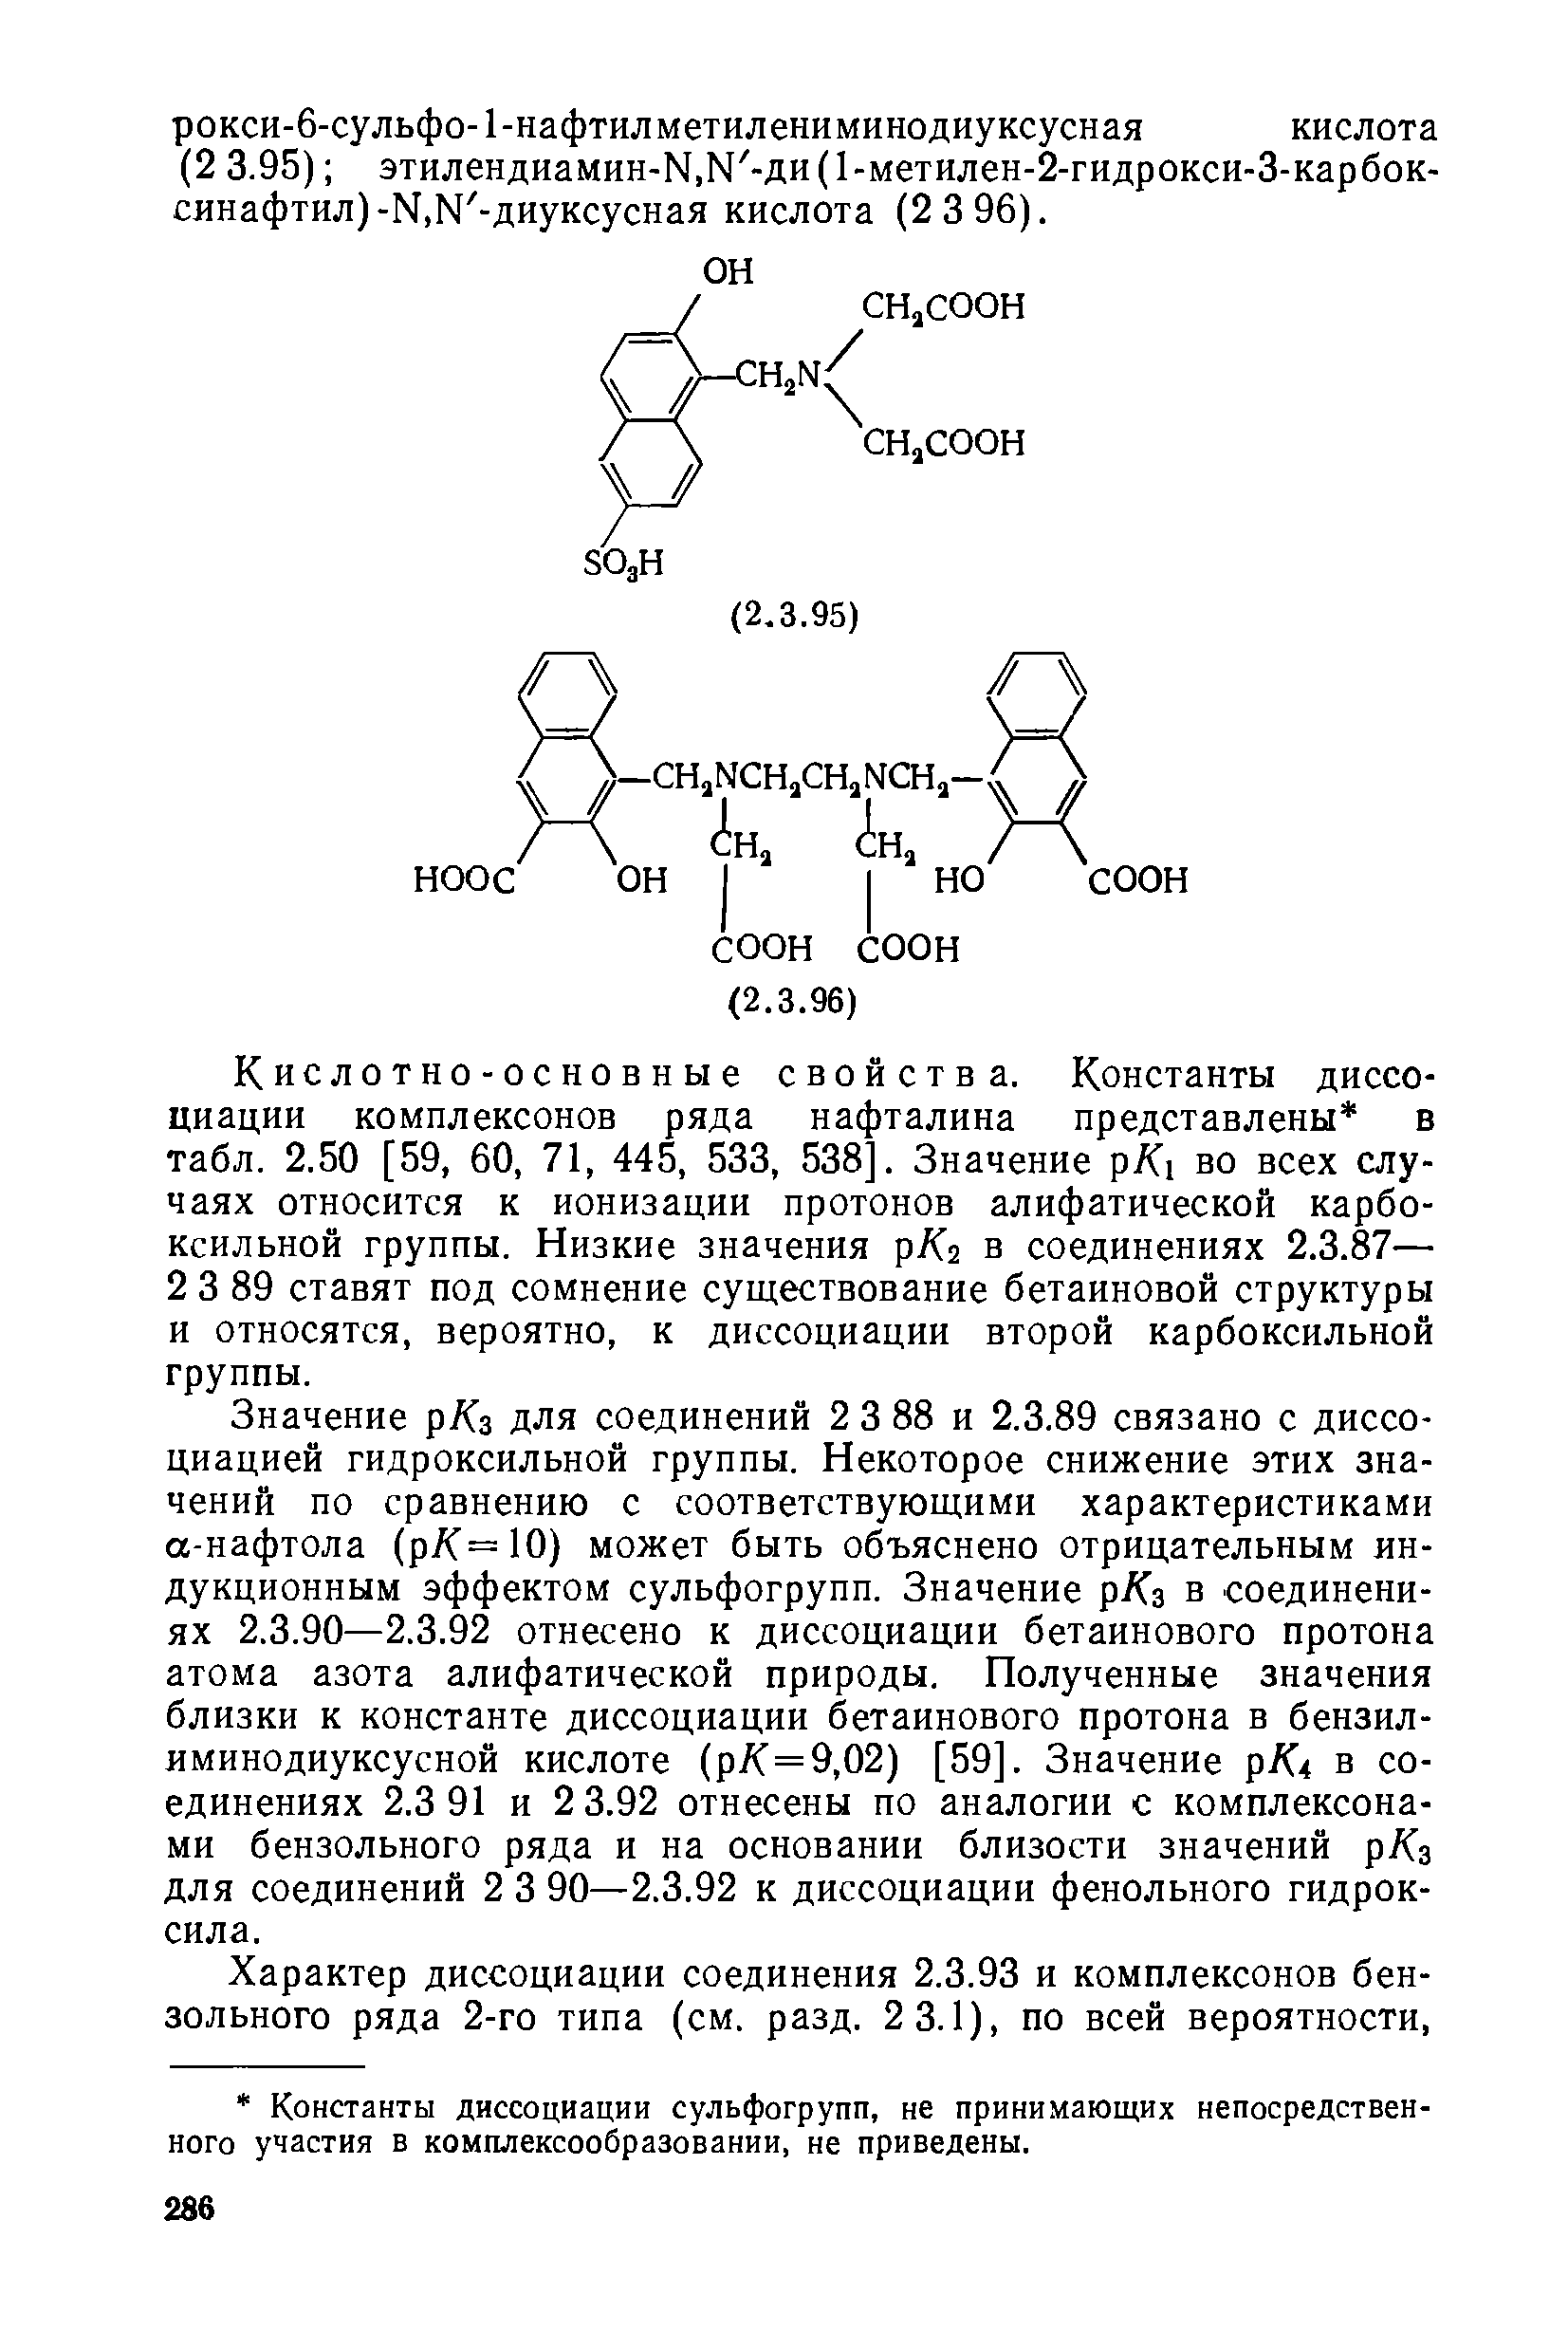 Значение р/Сз для соединений 2 3 88 и 2.3.89 связано с диссоциацией гидроксильной группы. Некоторое снижение этих значений по сравнению с соответствующими характеристиками а-нафтола (р/С=10) может быть объяснено отрицательным индукционным эффектом сульфогрупп. Значение р/Сз в соединениях 2.3.90—2.3.92 отнесено к диссоциации бетаинового протона атома азота алифатической природы. Полученные значения близки к константе диссоциации бетаинового протона в бензилиминодиуксусной кислоте (р/С=9,02) [59]. Значение р/С4 в соединениях 2.3 91 и 2 3.92 отнесены по аналогии с комплексонами бензольного ряда и на основании близости значений р/Сз для соединений 2 3 90—2.3.92 к диссоциации фенольного гидроксила.